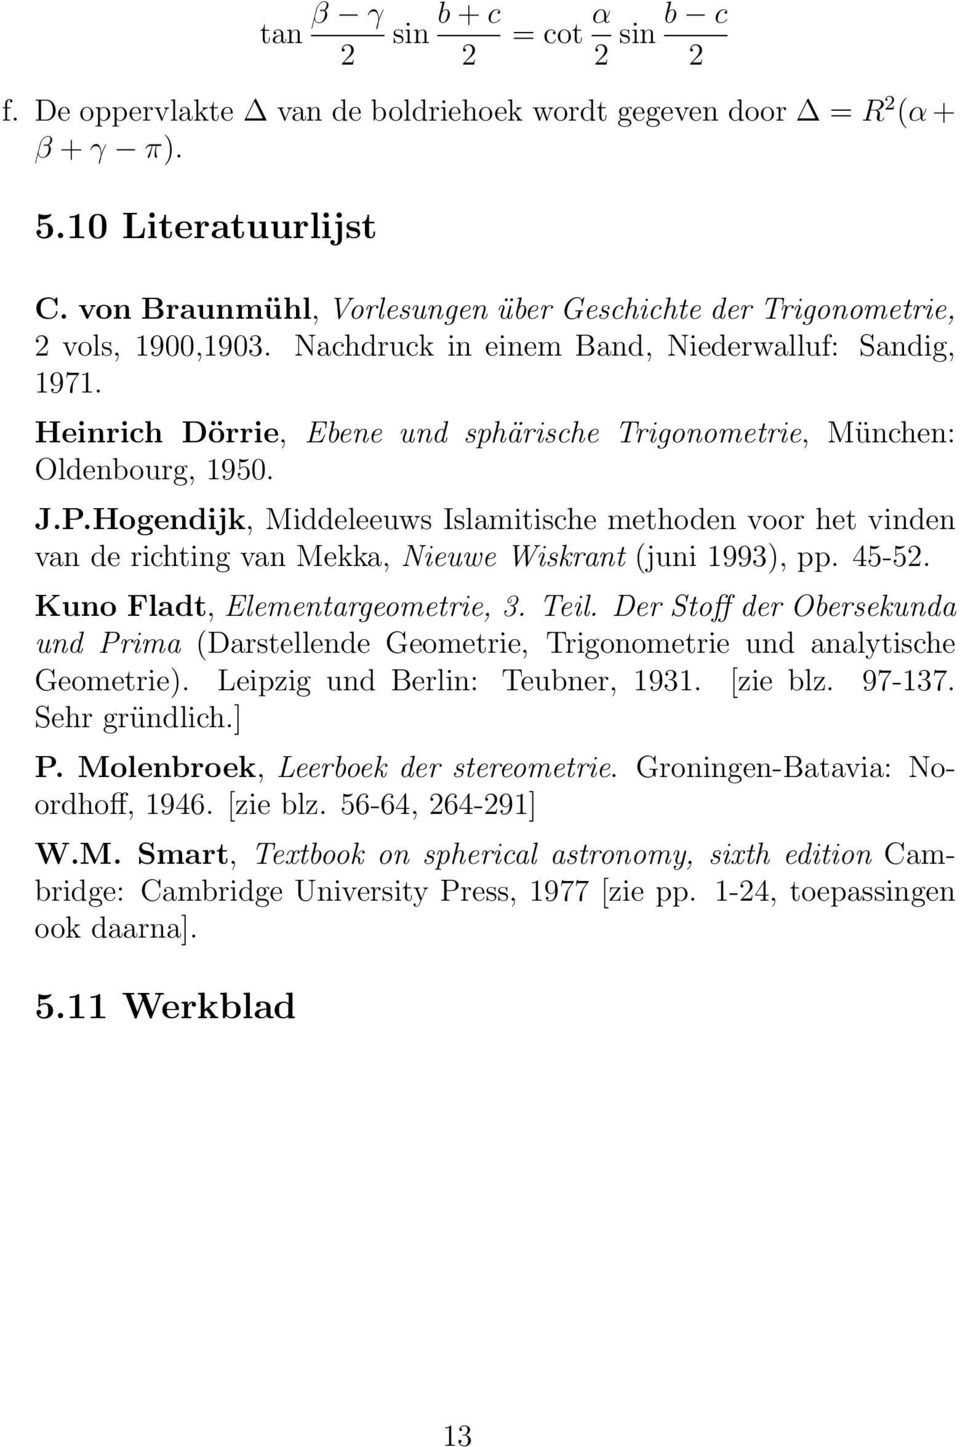 Heinrich Dörrie, Ebene und sphärische Trigonometrie, München: Oldenbourg, 1950. J.P.